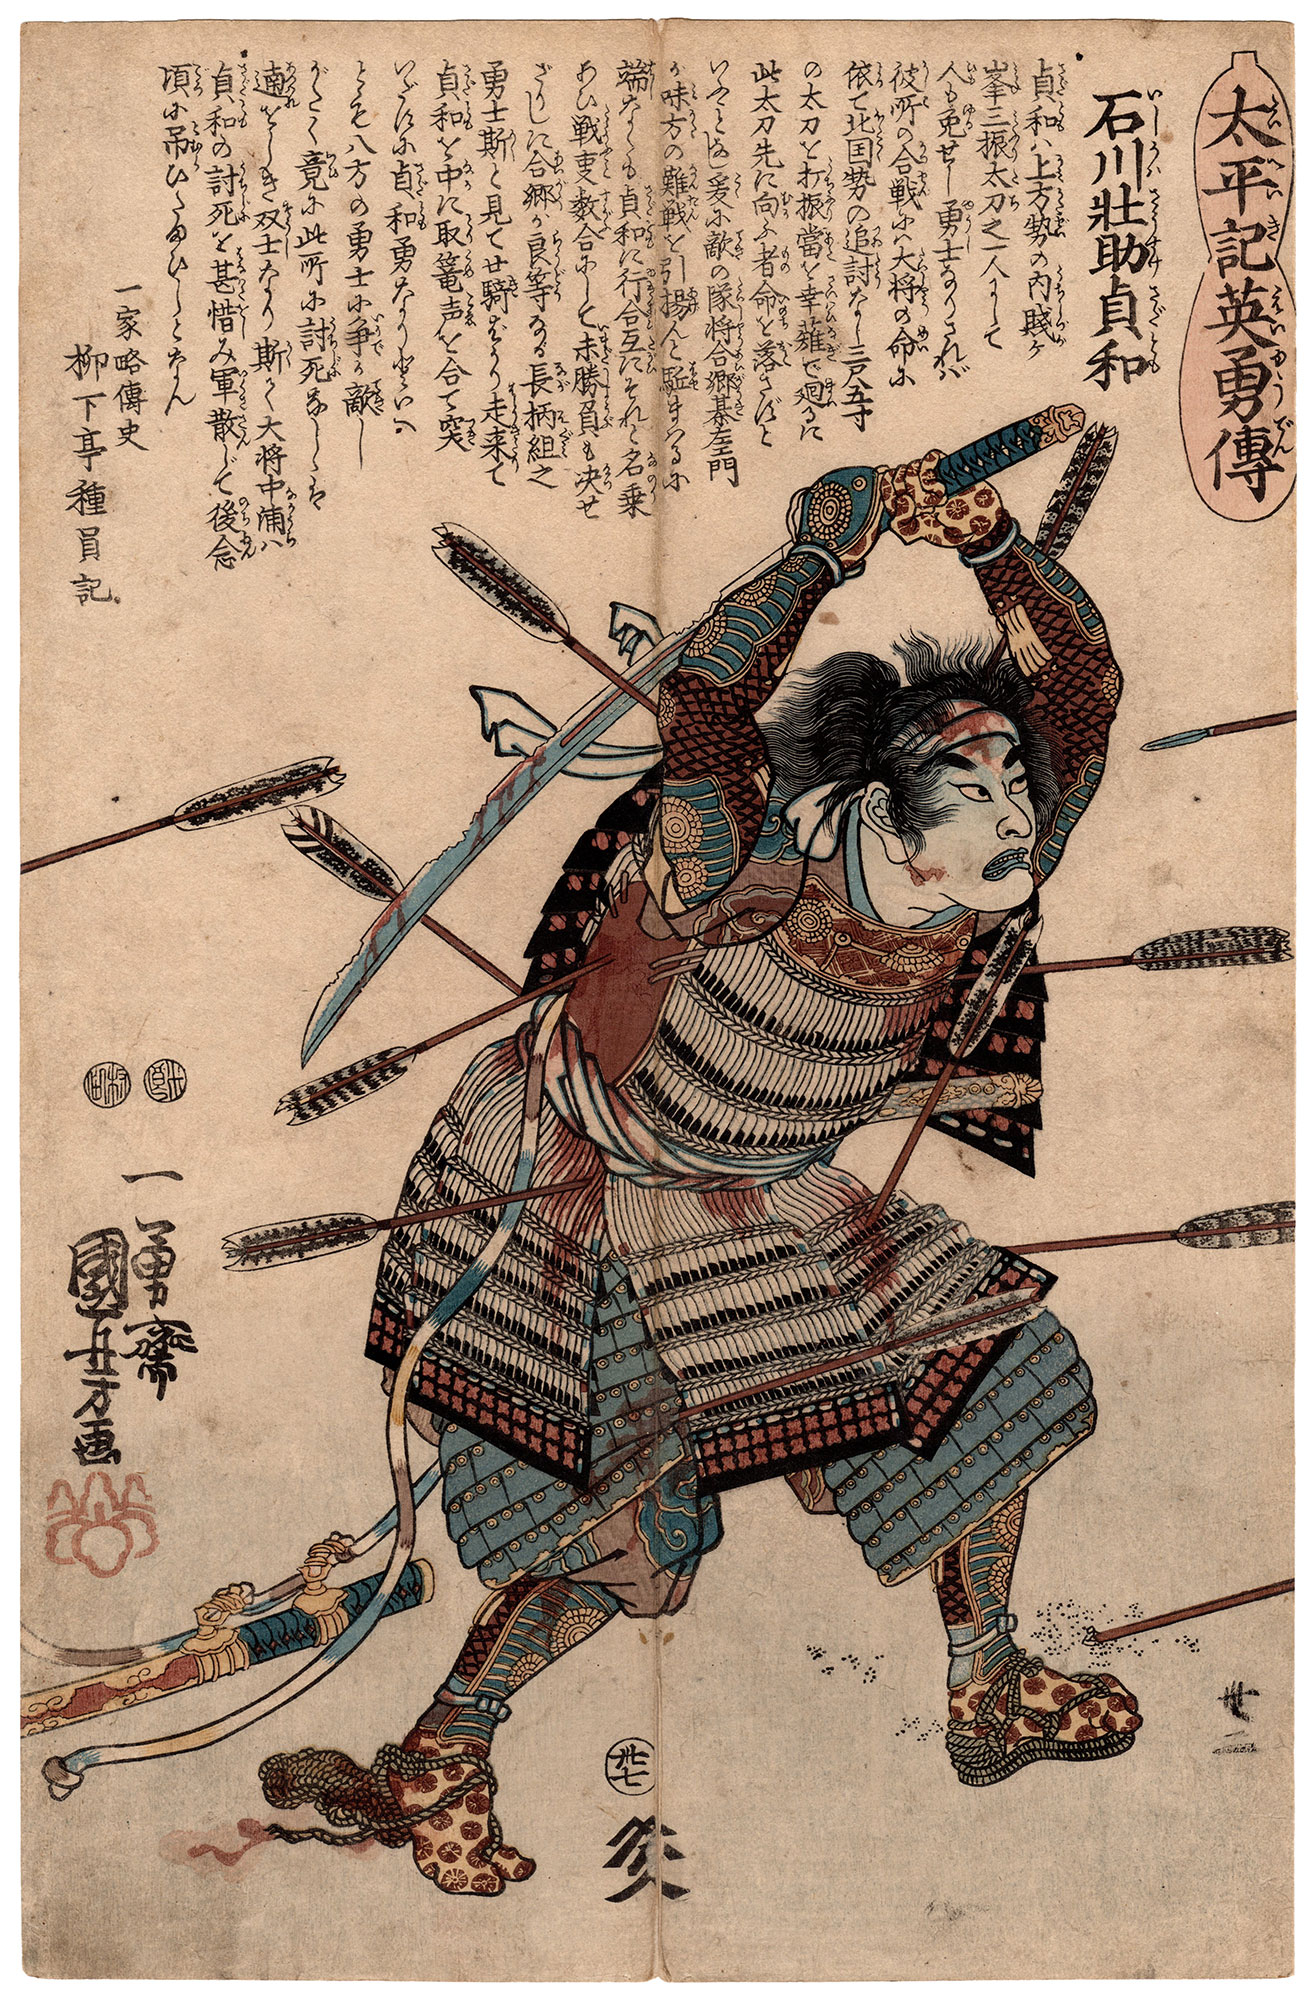 THE LAST COMBAT OF THE WARRIOR SADATOMO (Utagawa Kuniyoshi) – 美和 